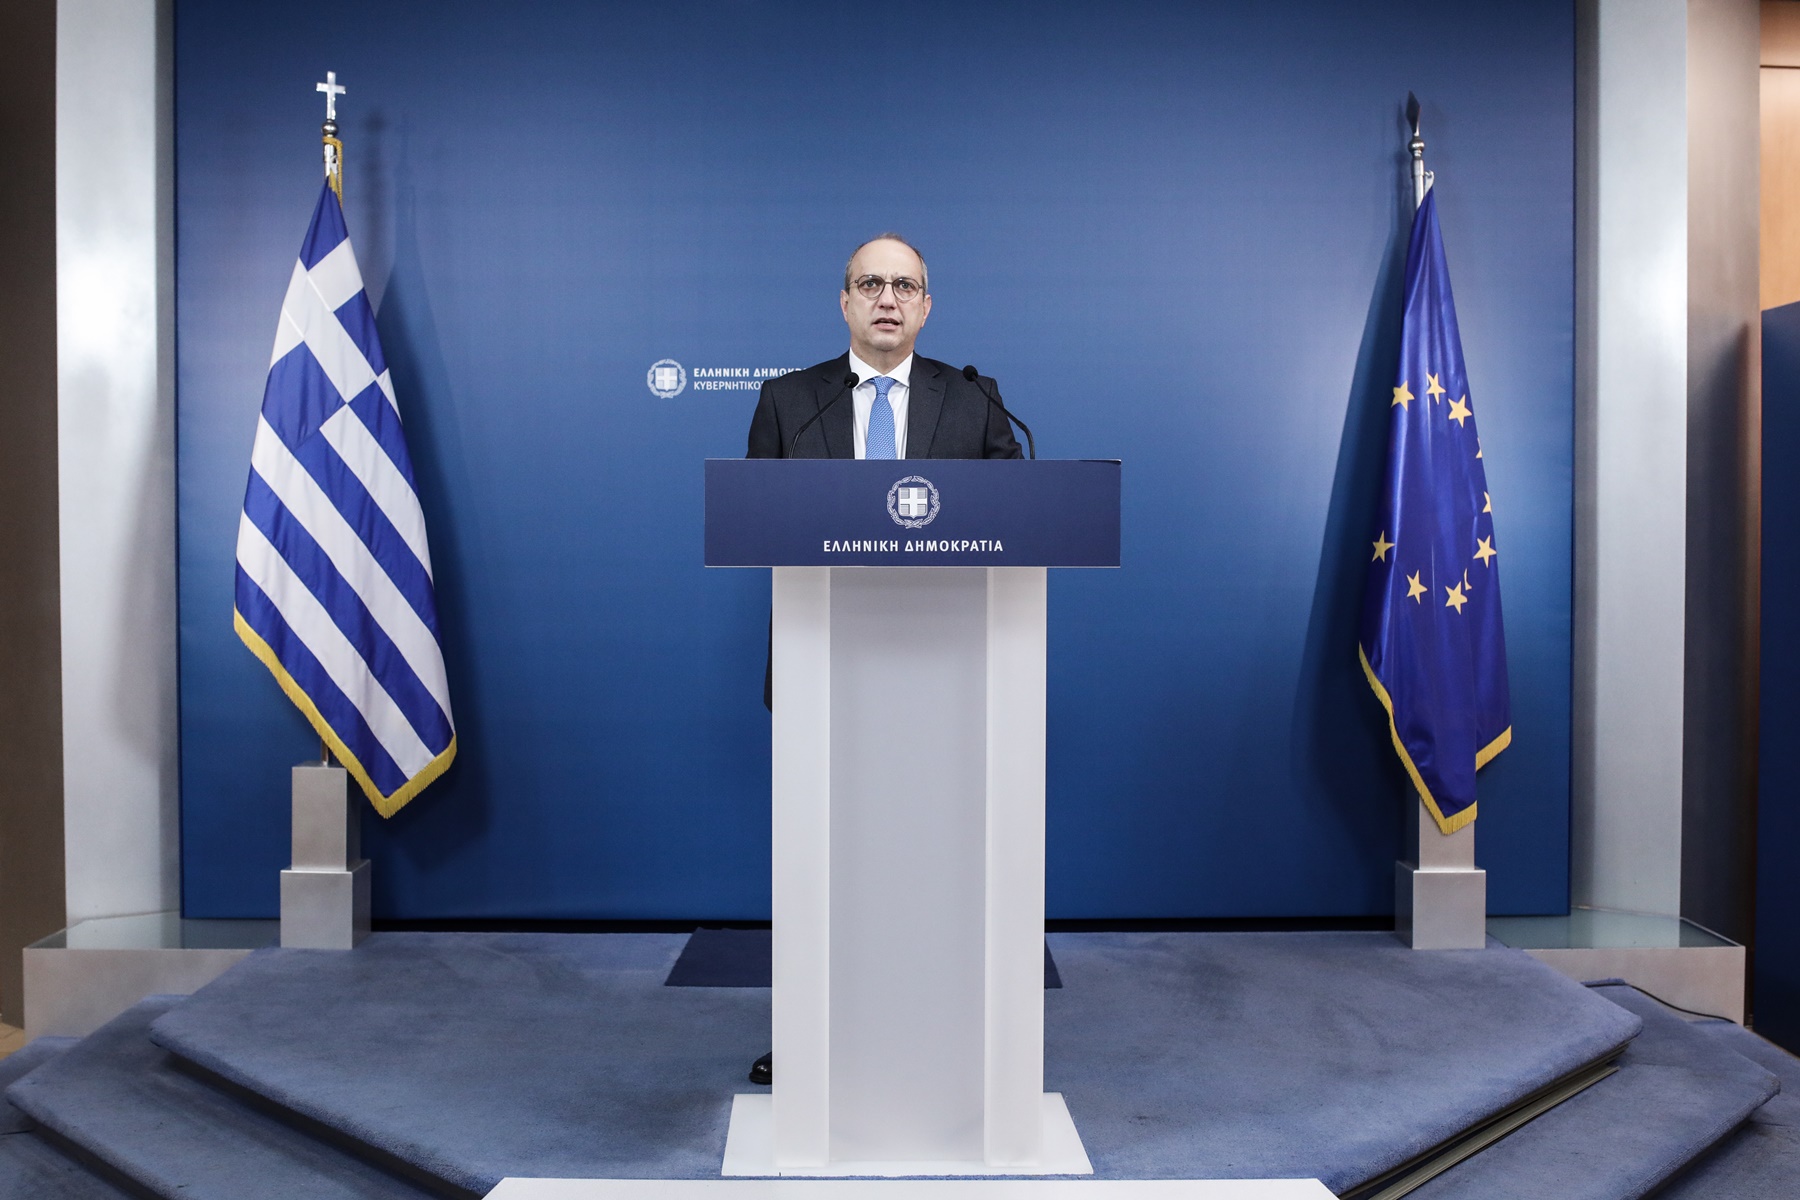 Λοκντάουν Ελλάδα: Ο Γιάννης Οικονόμου για επιβολή περιορισμού στις μετακινήσεις